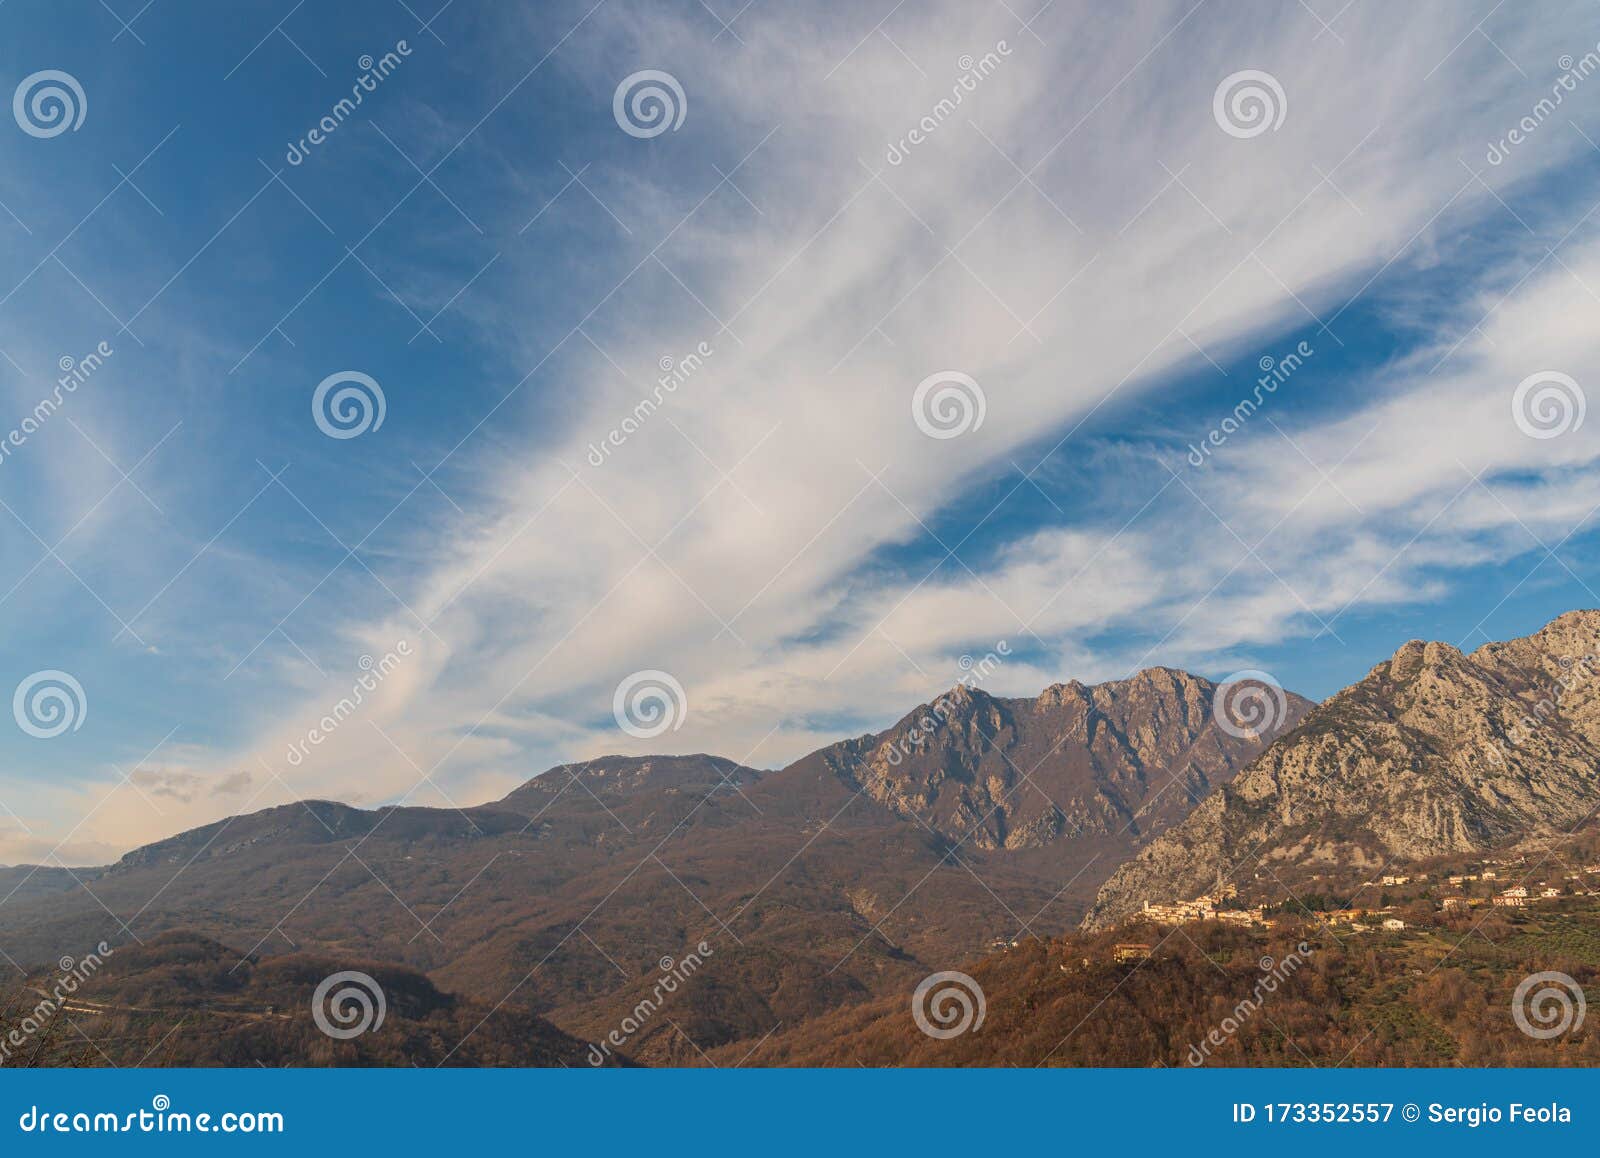 landscapes of molise. monte marrone e castelnuovo al volturno.